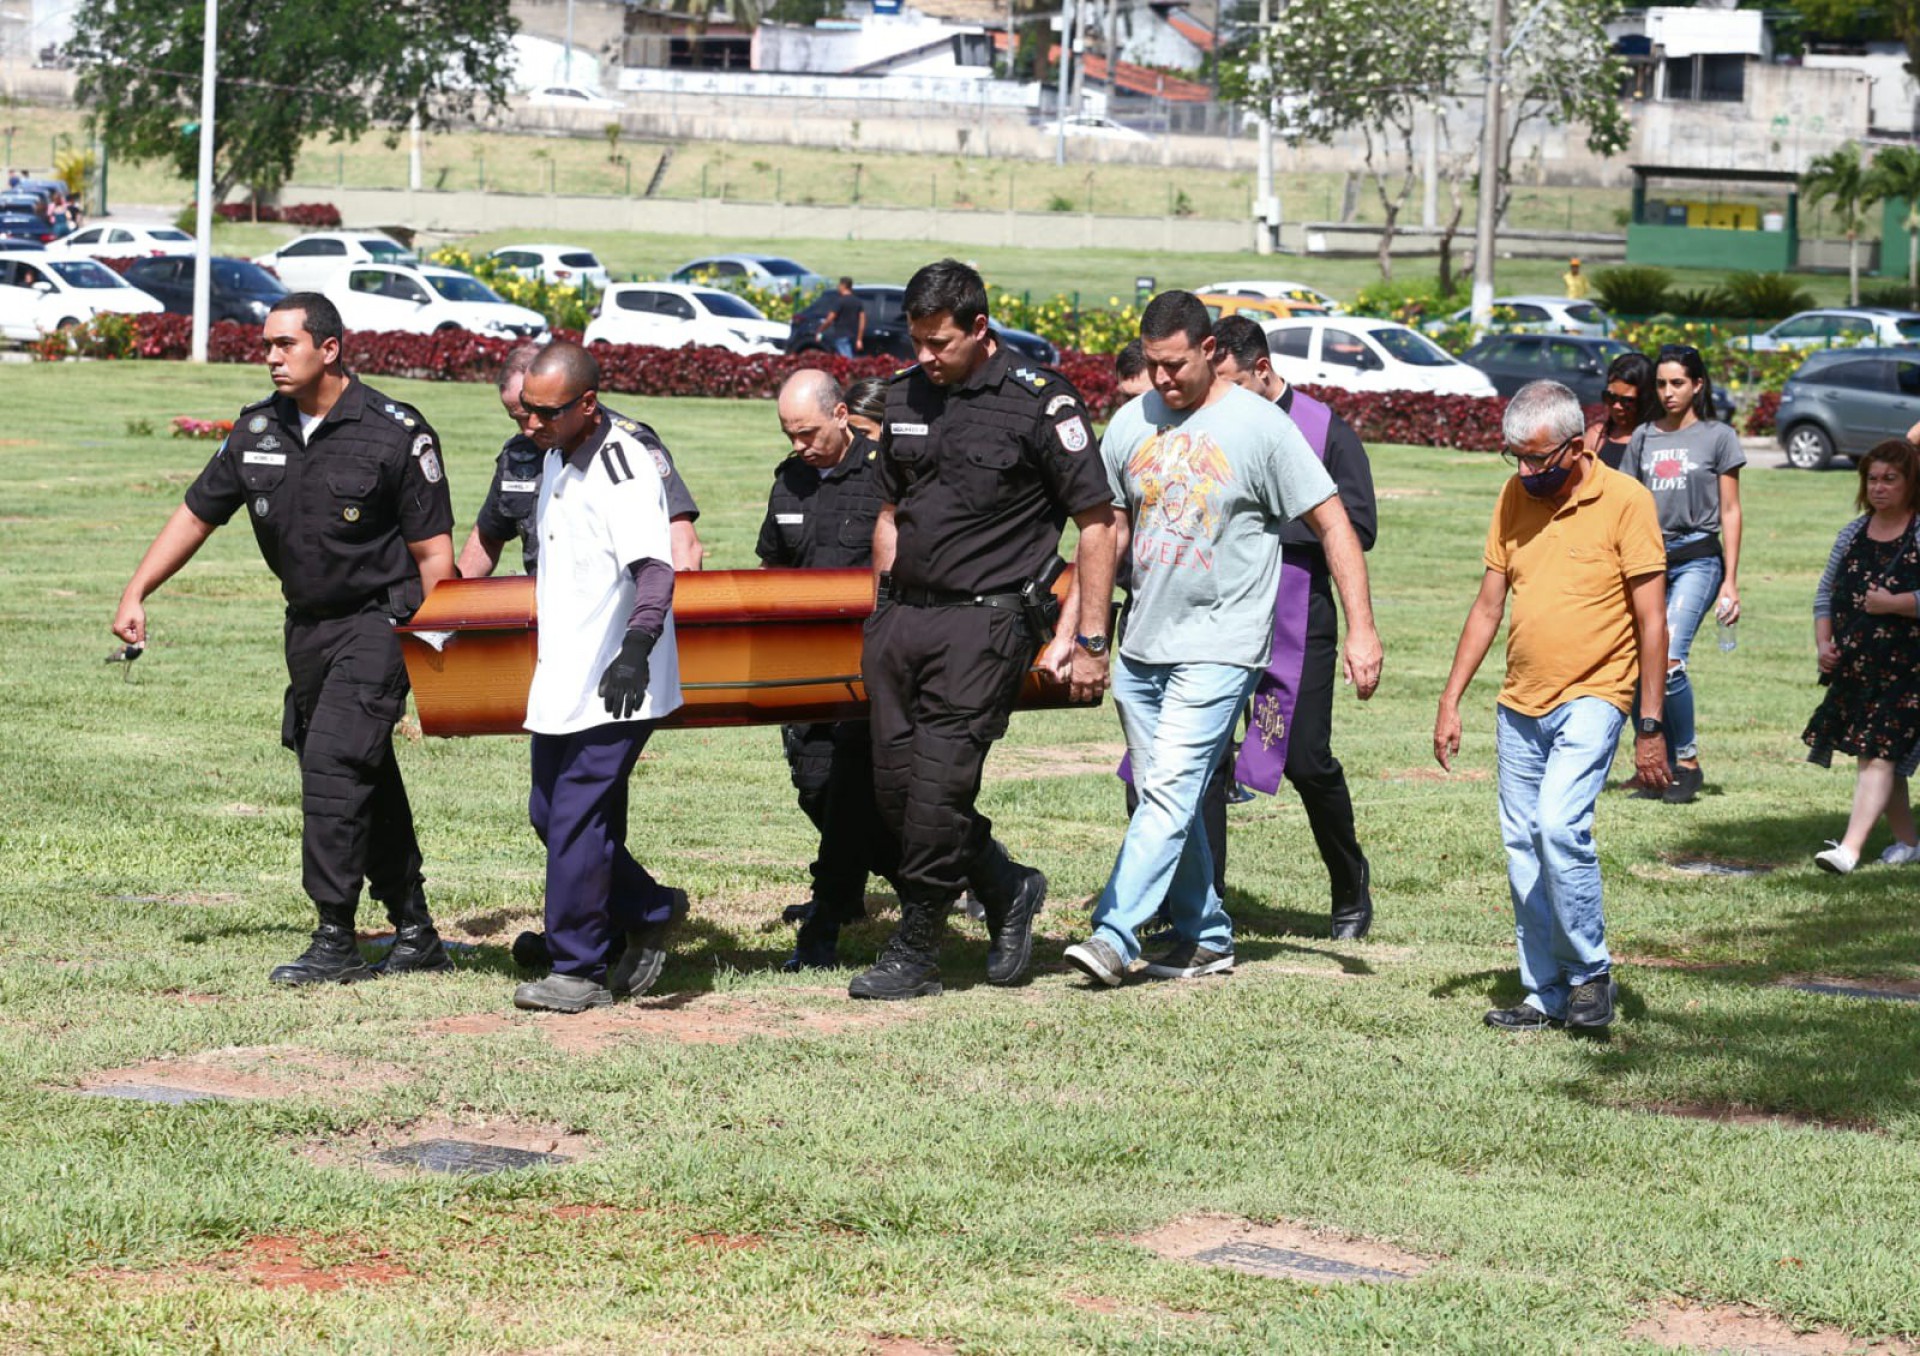 Familiares e amigos compareceram no cemitério Jardim da Saudade para se despedir de Luiz Carlos - Cléber Mendes / Agência O Dia